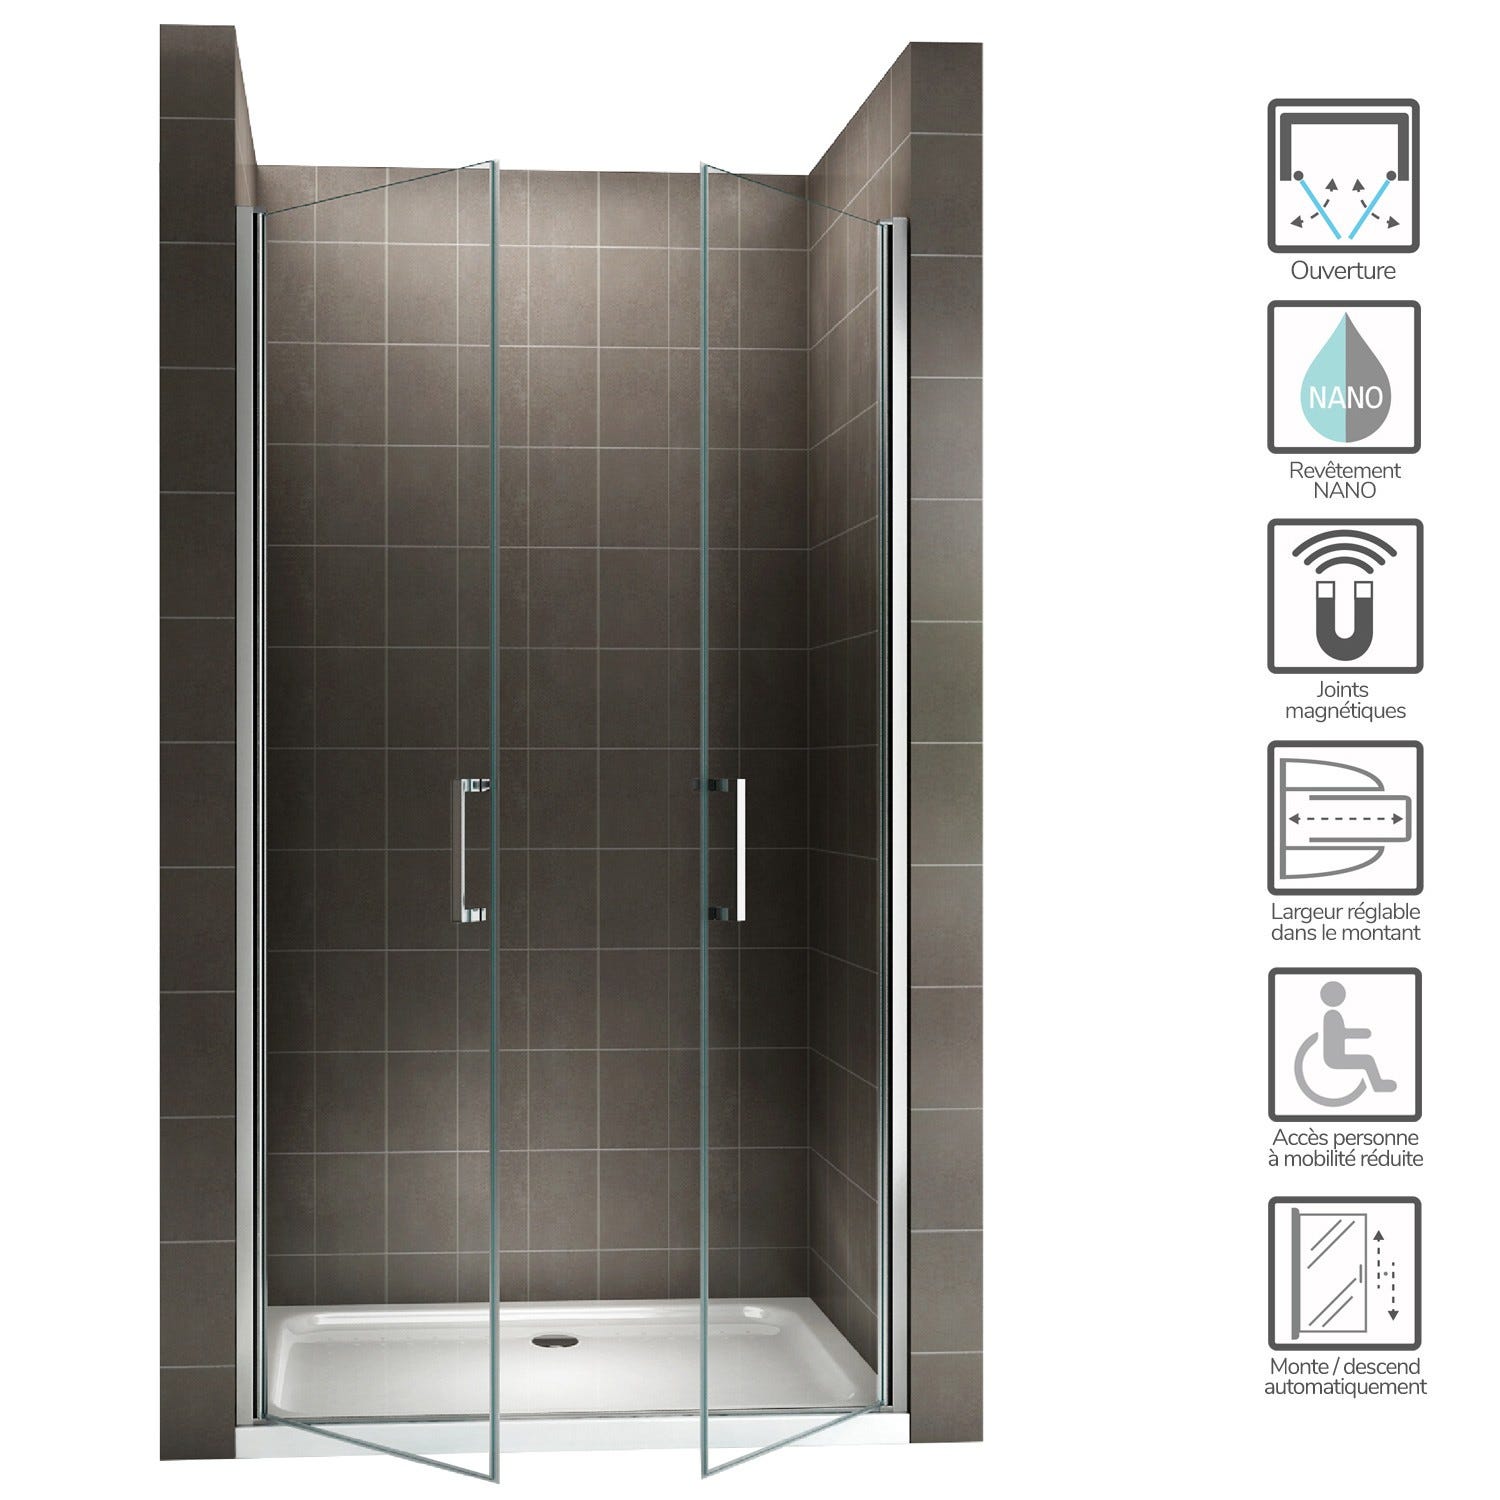 KAYA Porte de douche H 180 largeur réglable 71 à 74 cm verre transparent 1